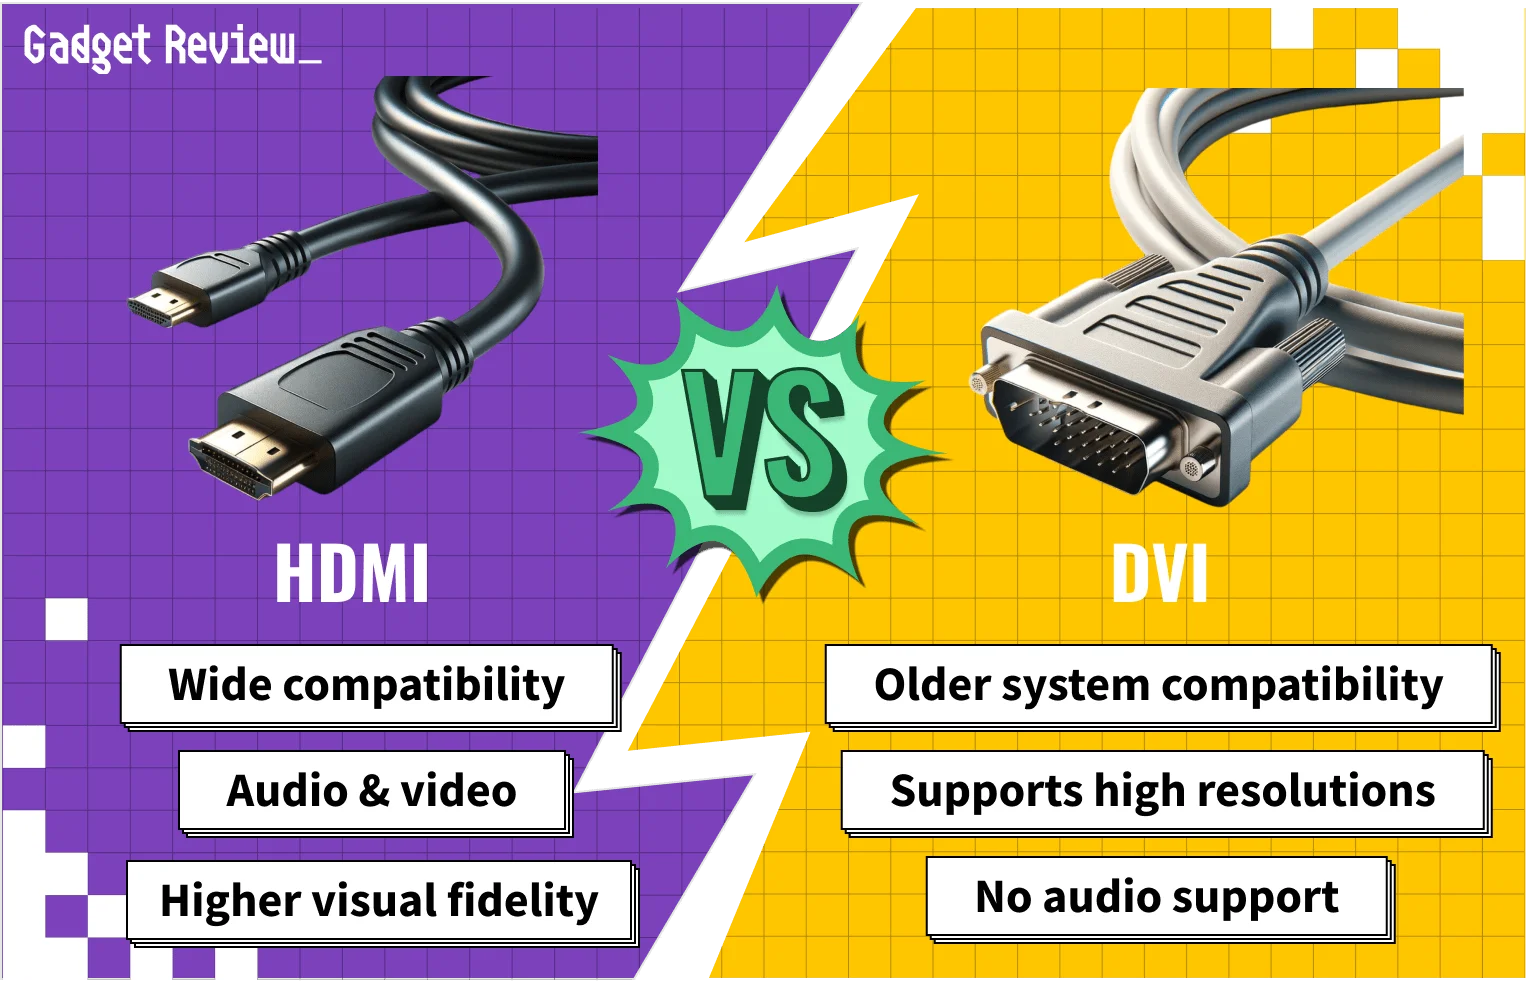 HDMI vs. DVI for Gaming